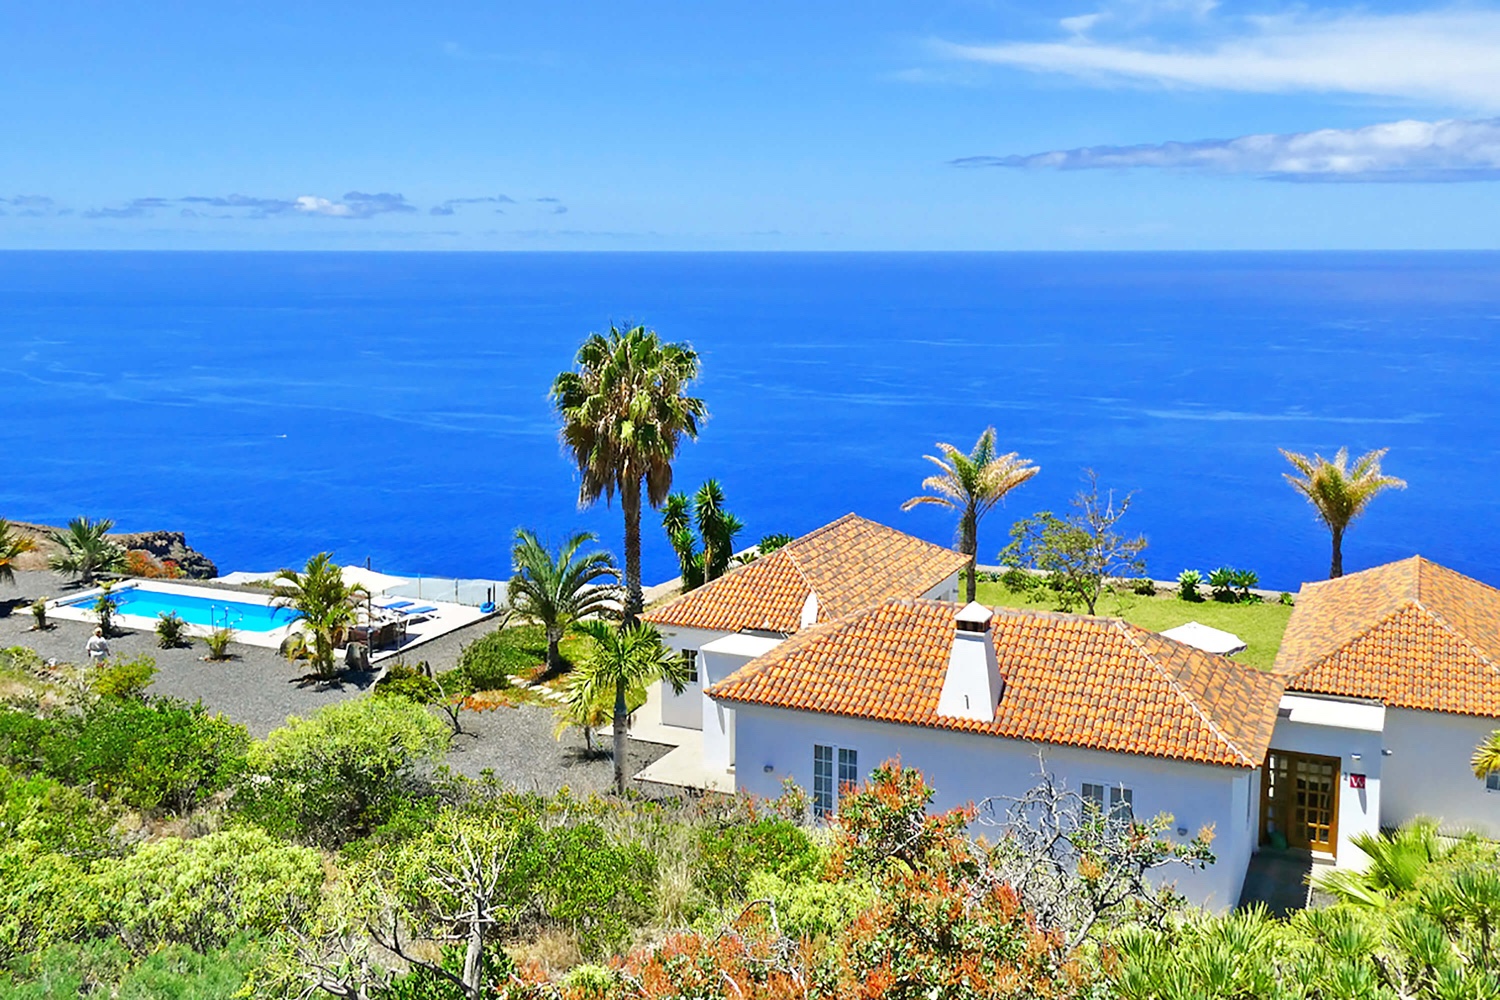 Meget flot moderne hus med privat pool og en fantastisk panoramaudsigt over Atlanterhavet. Det meget veludstyrede feriehus er ideelt til en ferie på La Palma med alle bekvemmeligheder.